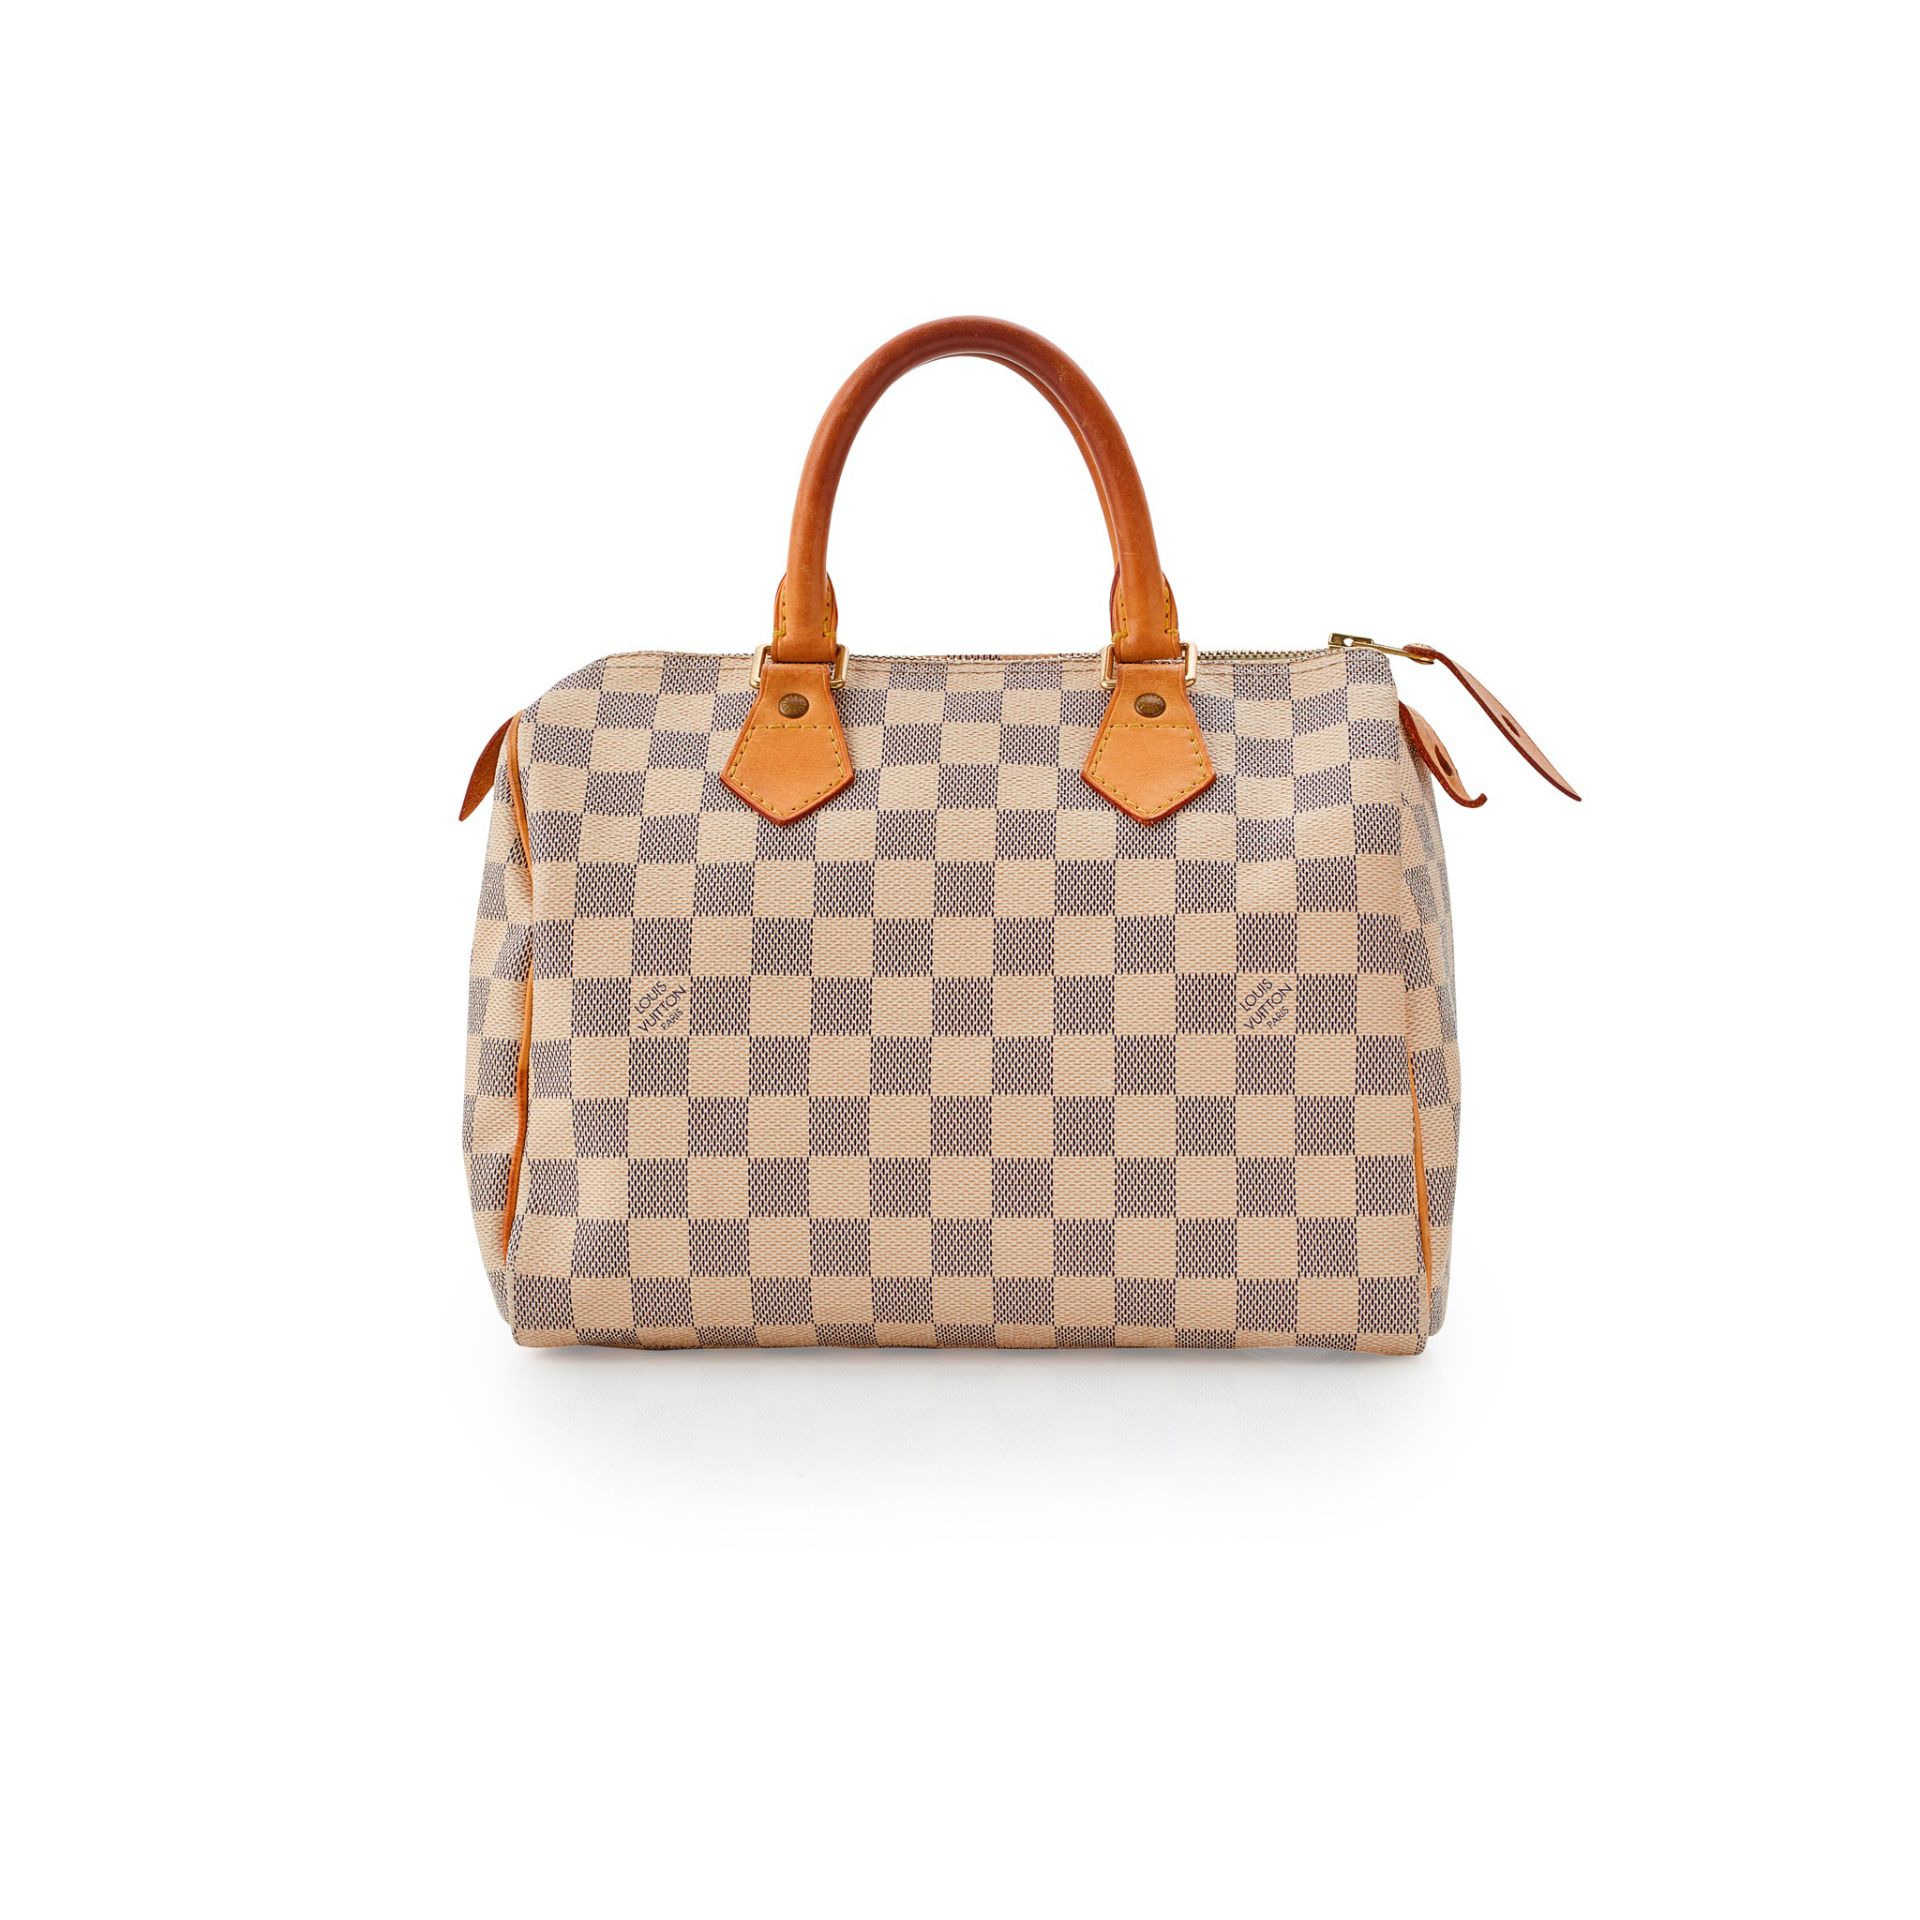 A 'Speedy 25' handbag, Louis Vuitton - Image 2 of 2